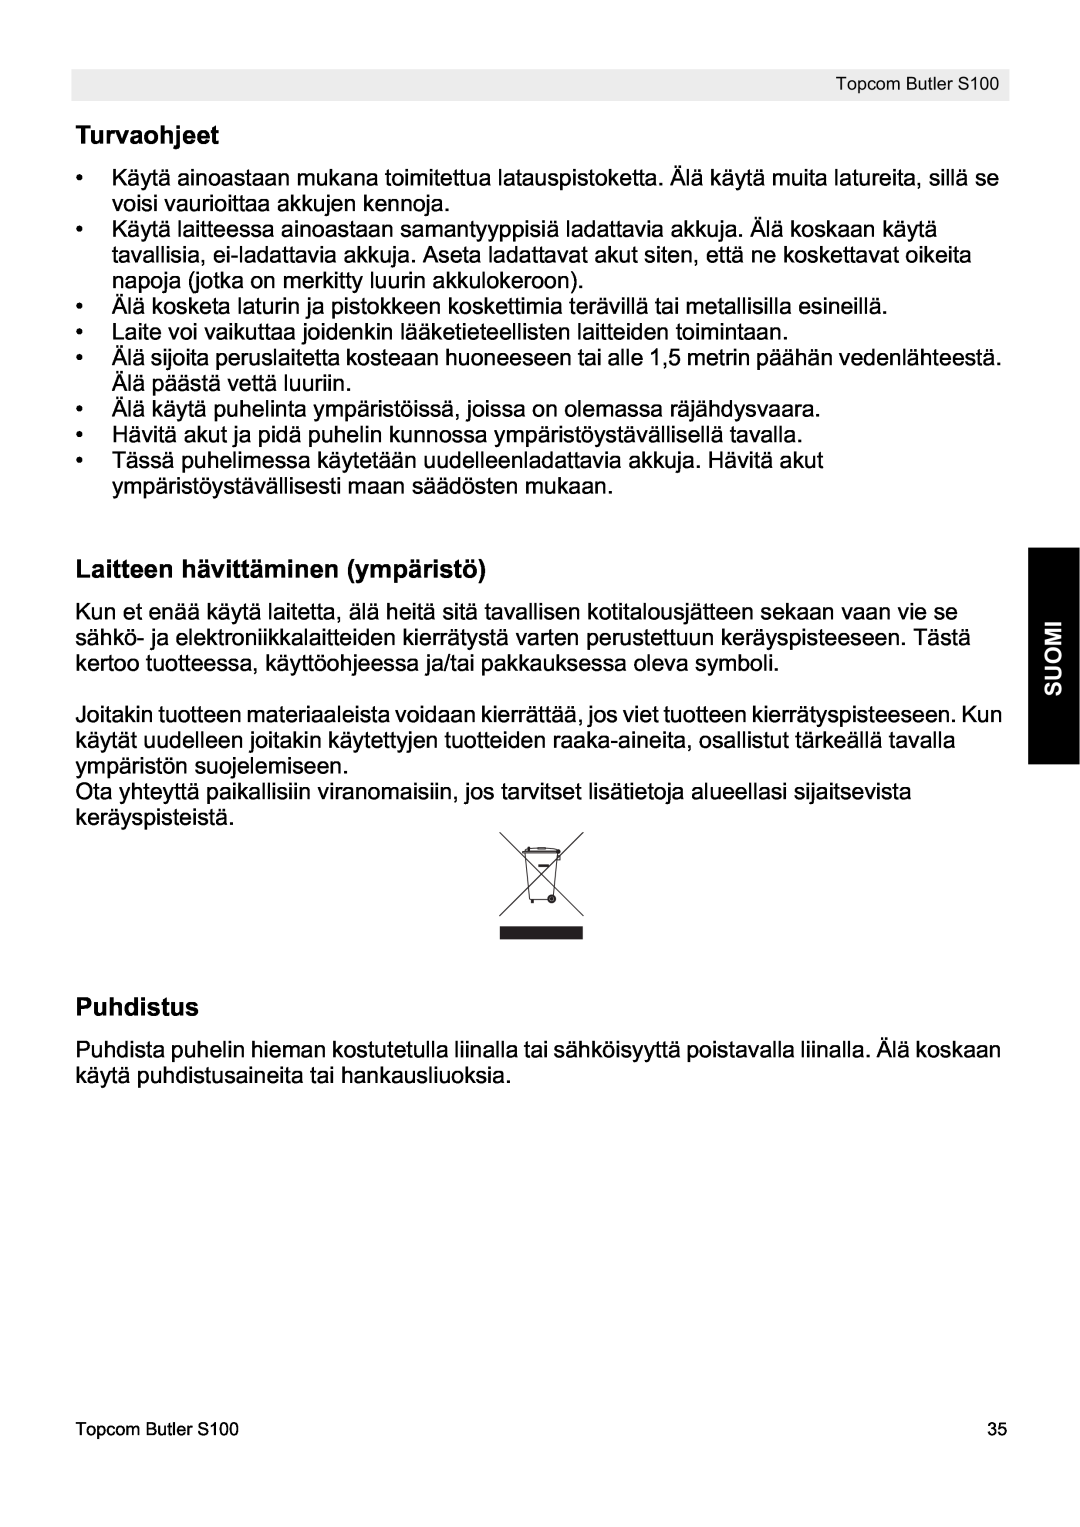 Topcom S100 manual do utilizador Turvaohjeet, Laitteen hävittäminen ympäristö, Puhdistus, Suomi 